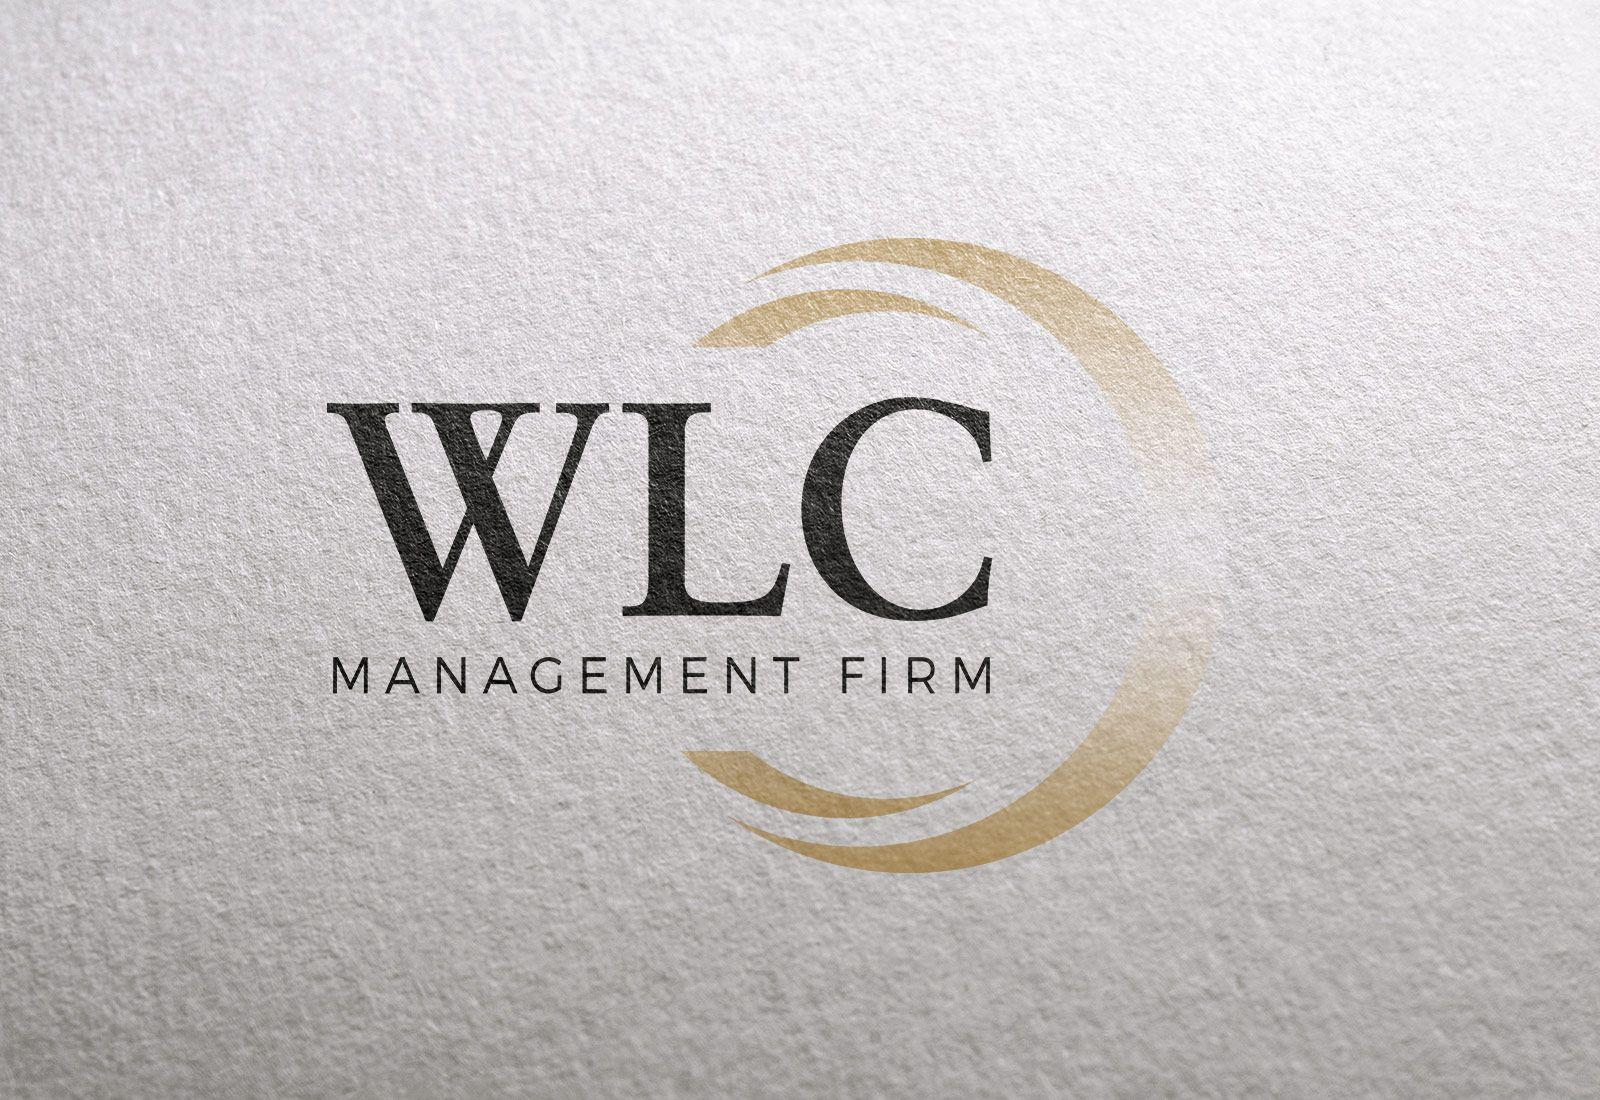 WLC Logo - WLC Management Firm Arthur Design Co